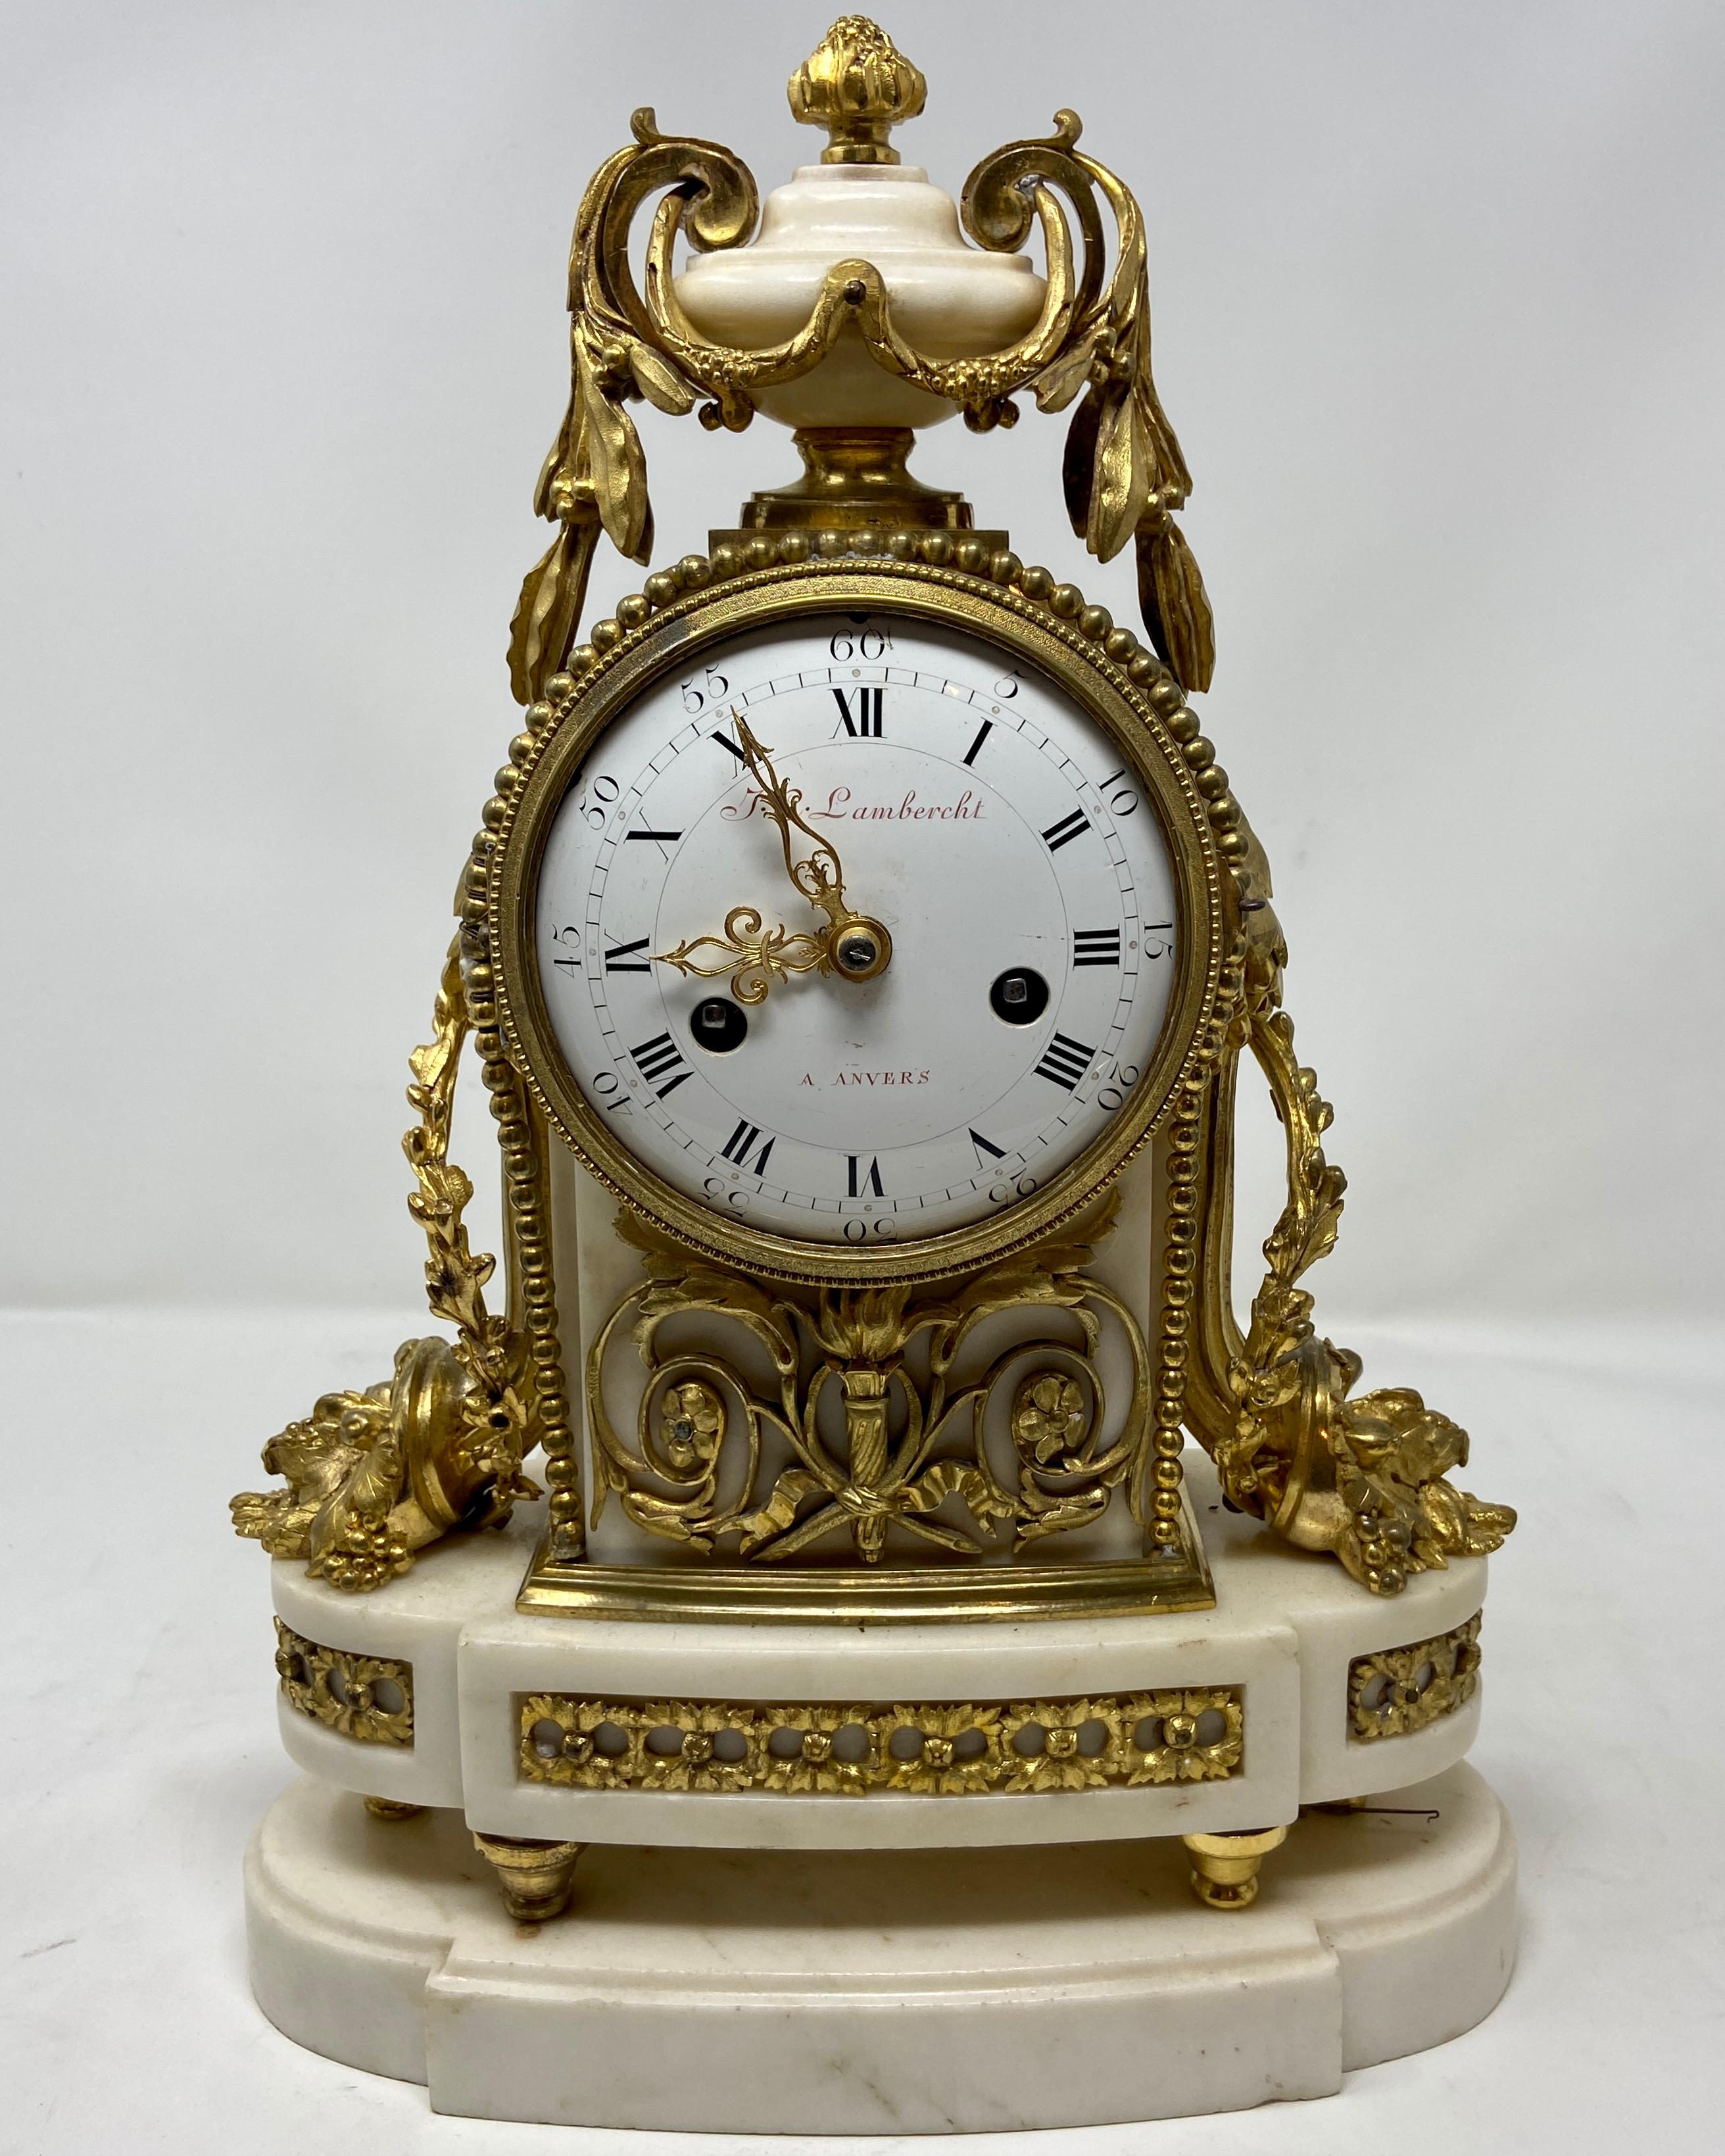 Antike Französisch Louis XVI weißem Marmor & Goldbronze 3 Stück Garniture Uhr gesetzt.
Uhr: 14